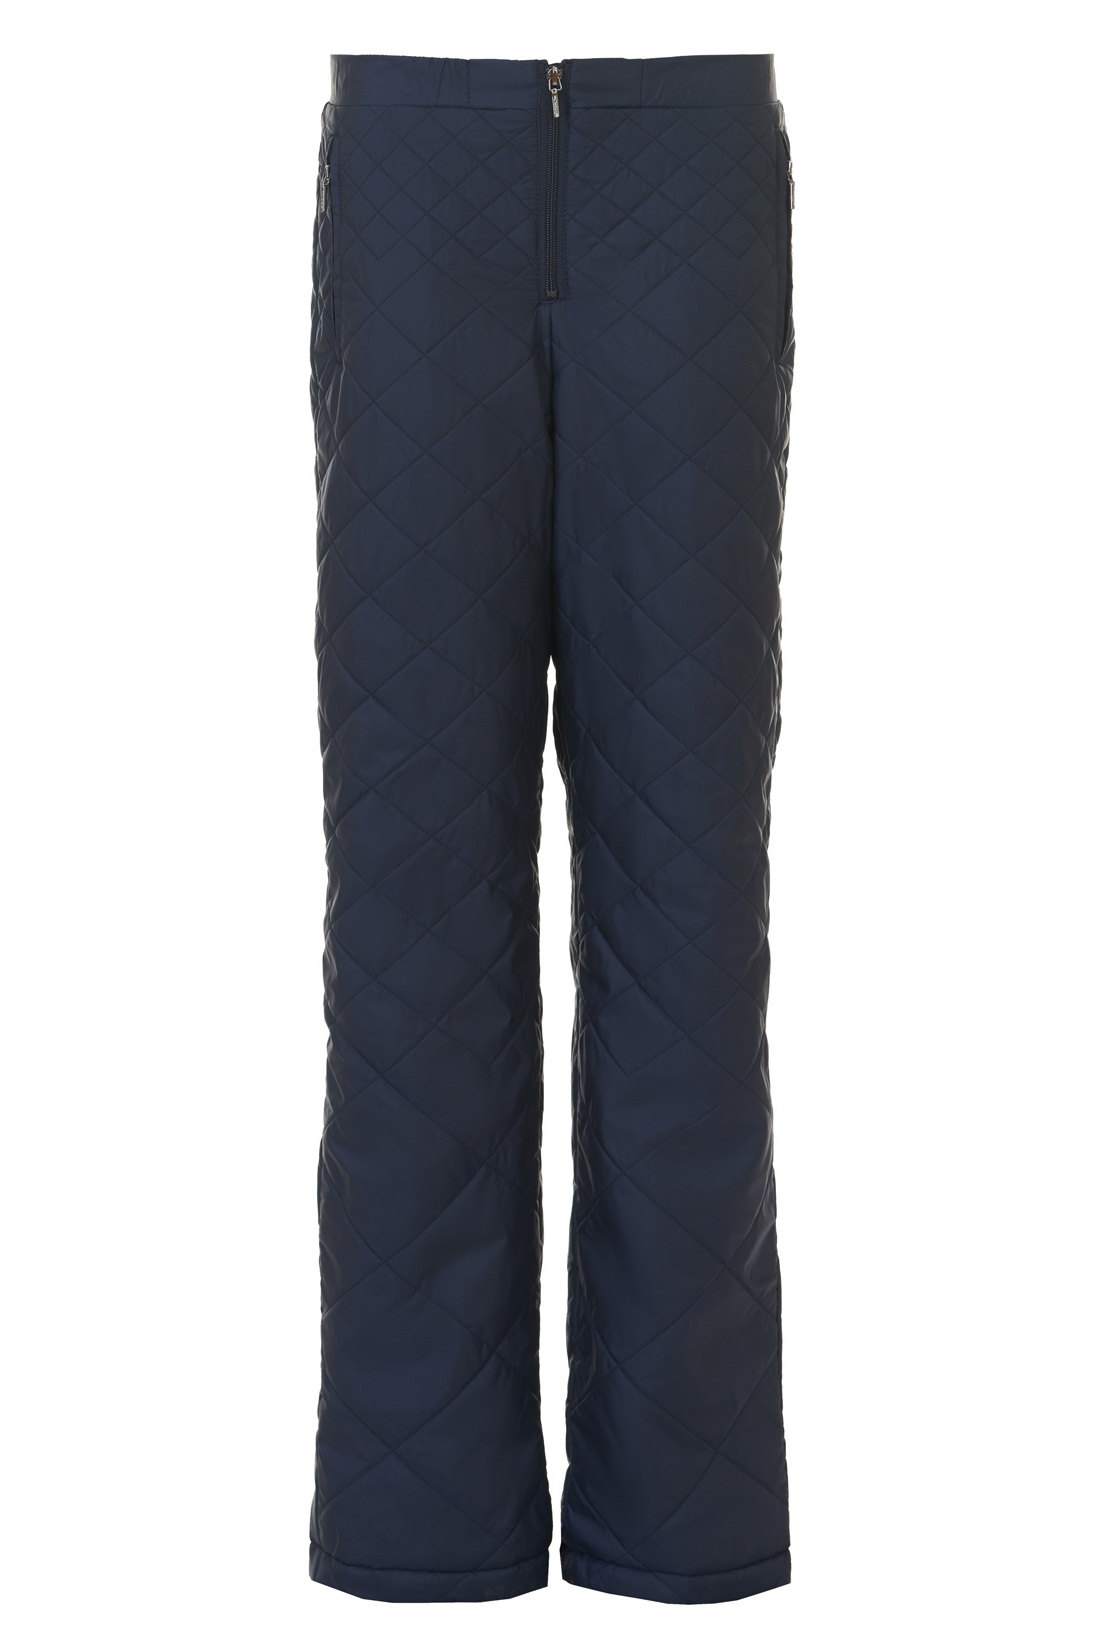 Утеплённые брюки на молнии (арт. baon B297506), размер XS, цвет синий Утеплённые брюки на молнии (арт. baon B297506) - фото 3